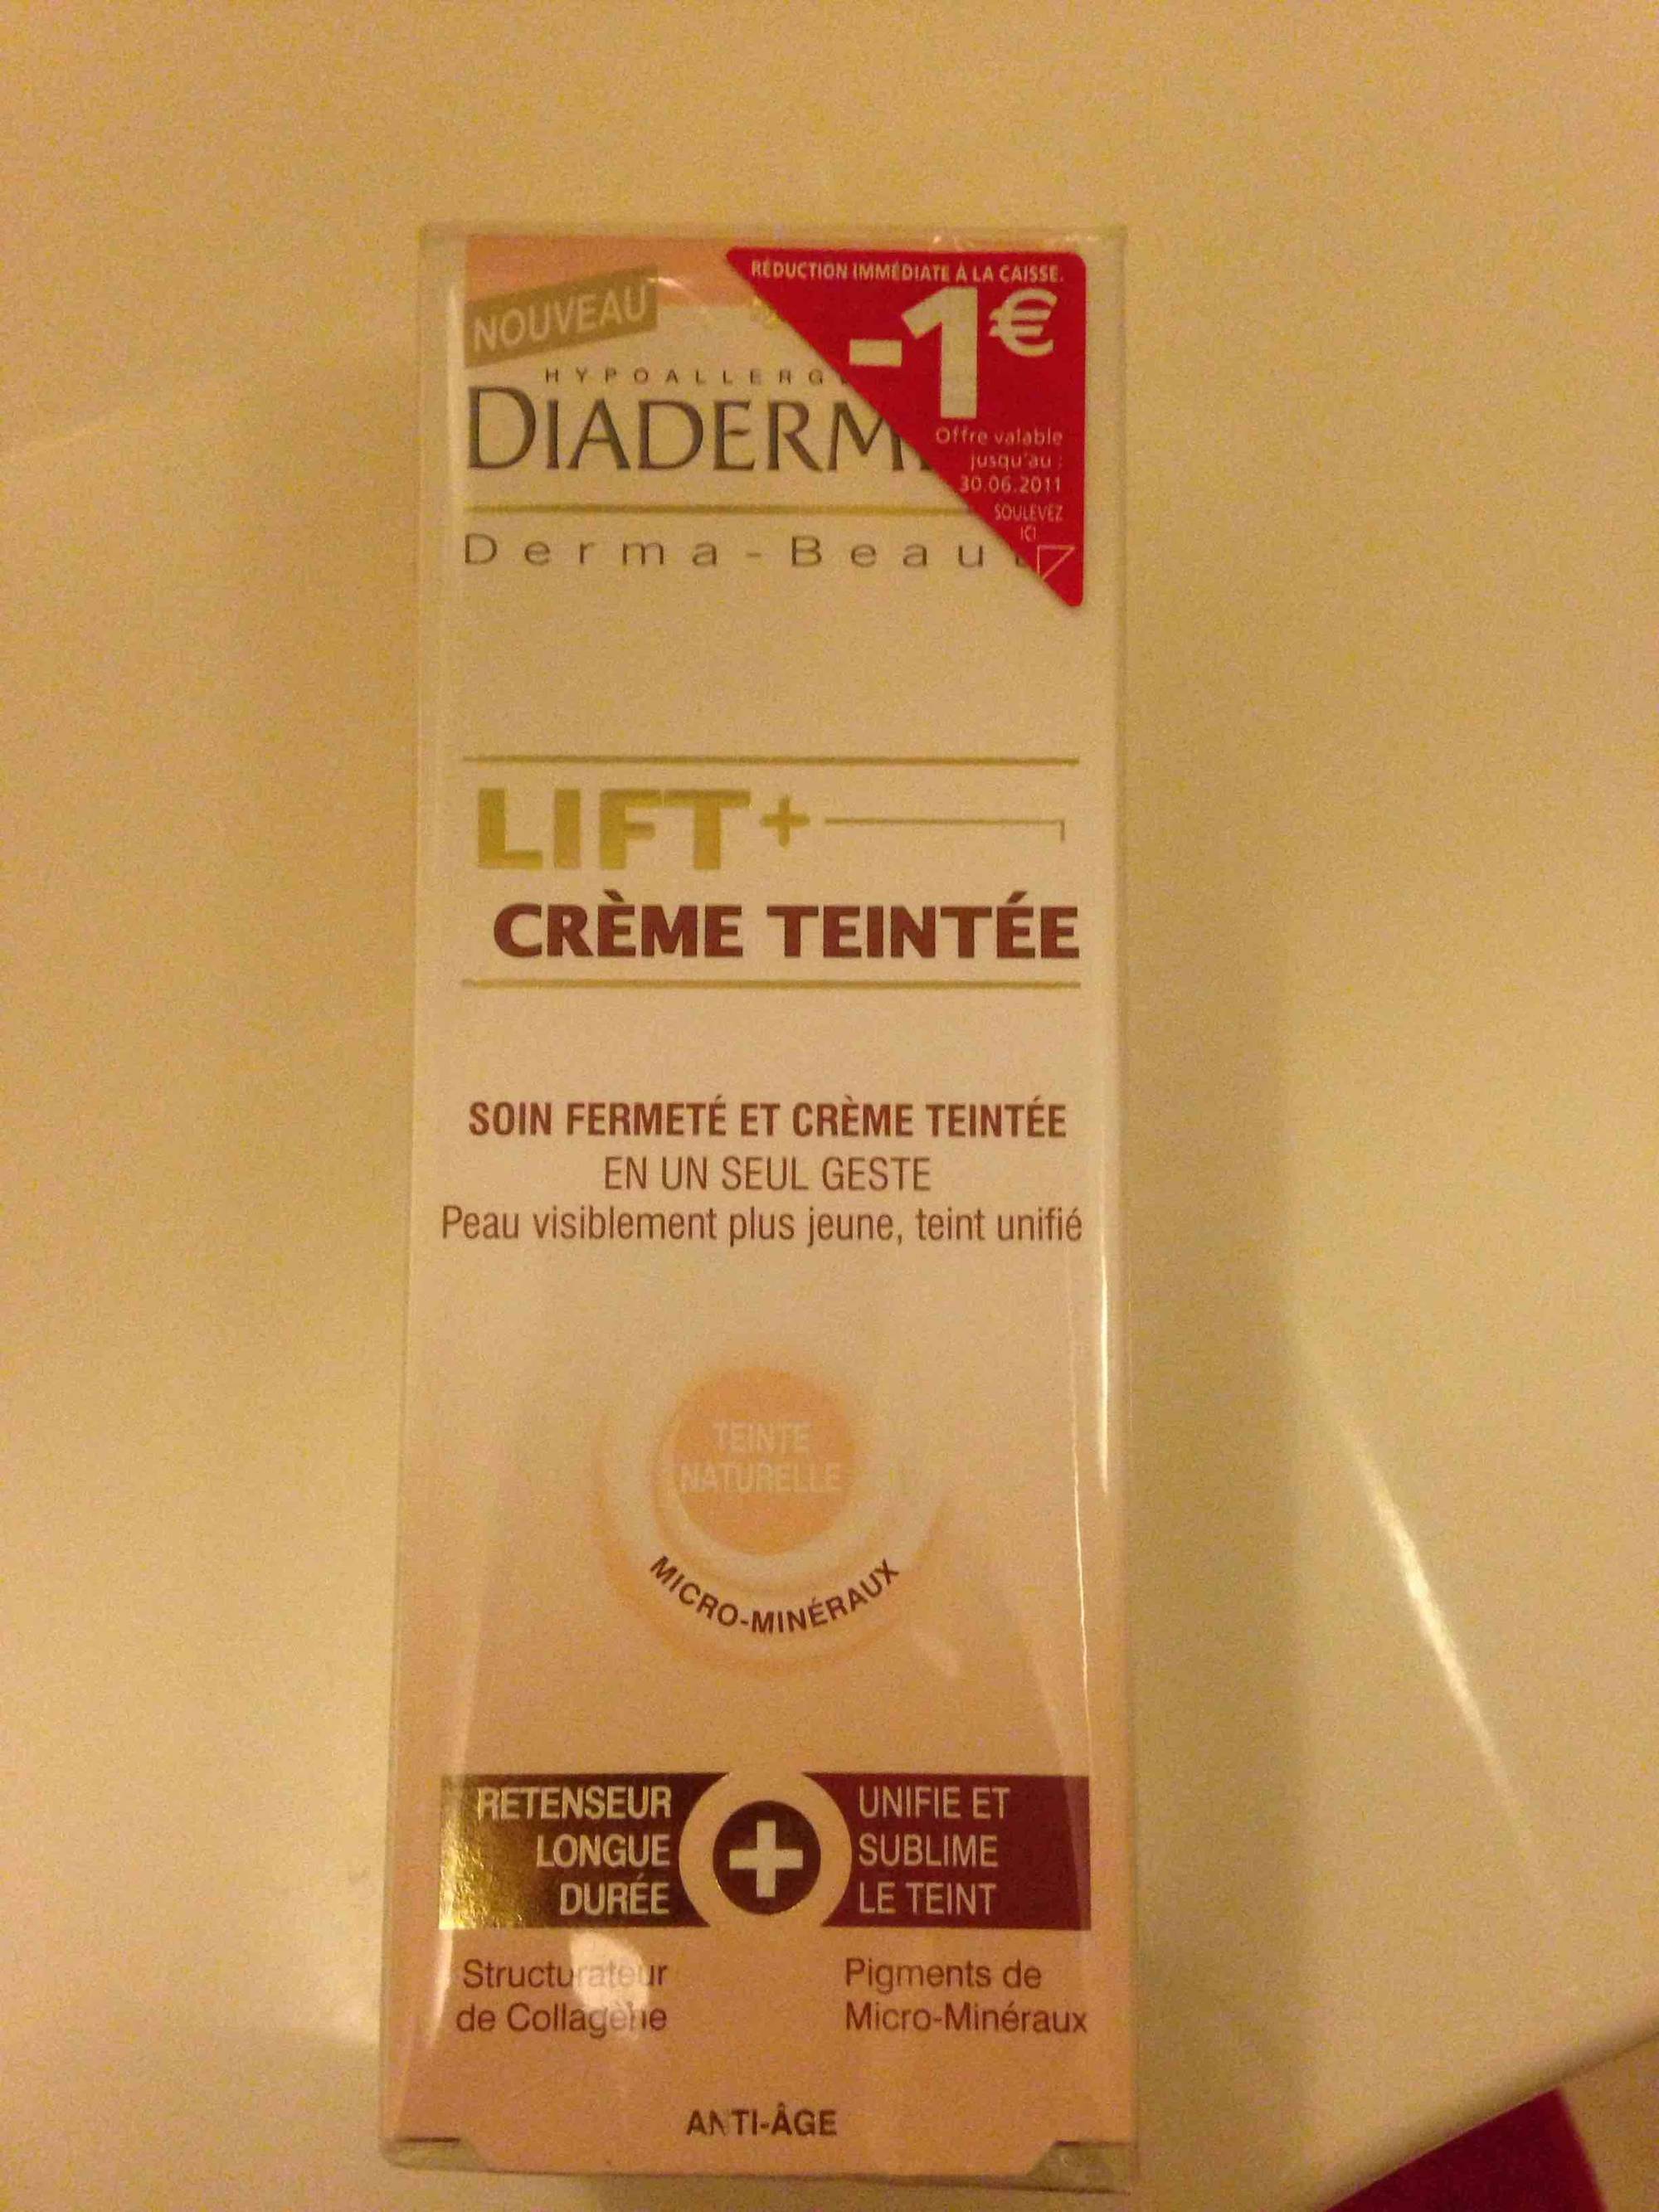 DIADERMINE - Lift + crème teintée anti-âge